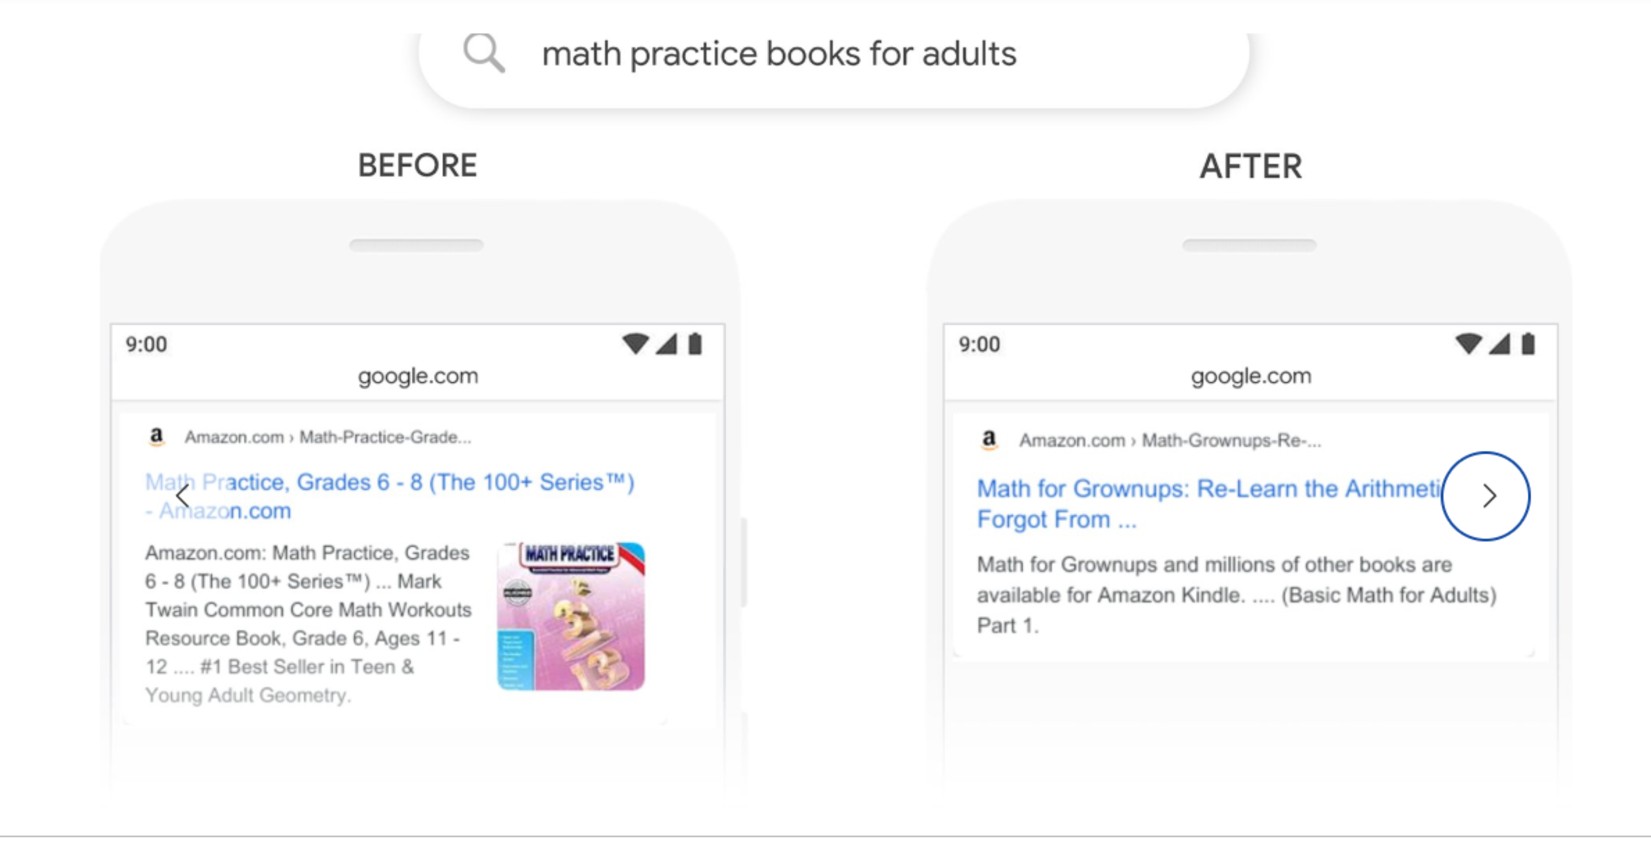 αναζητηση google math practice books